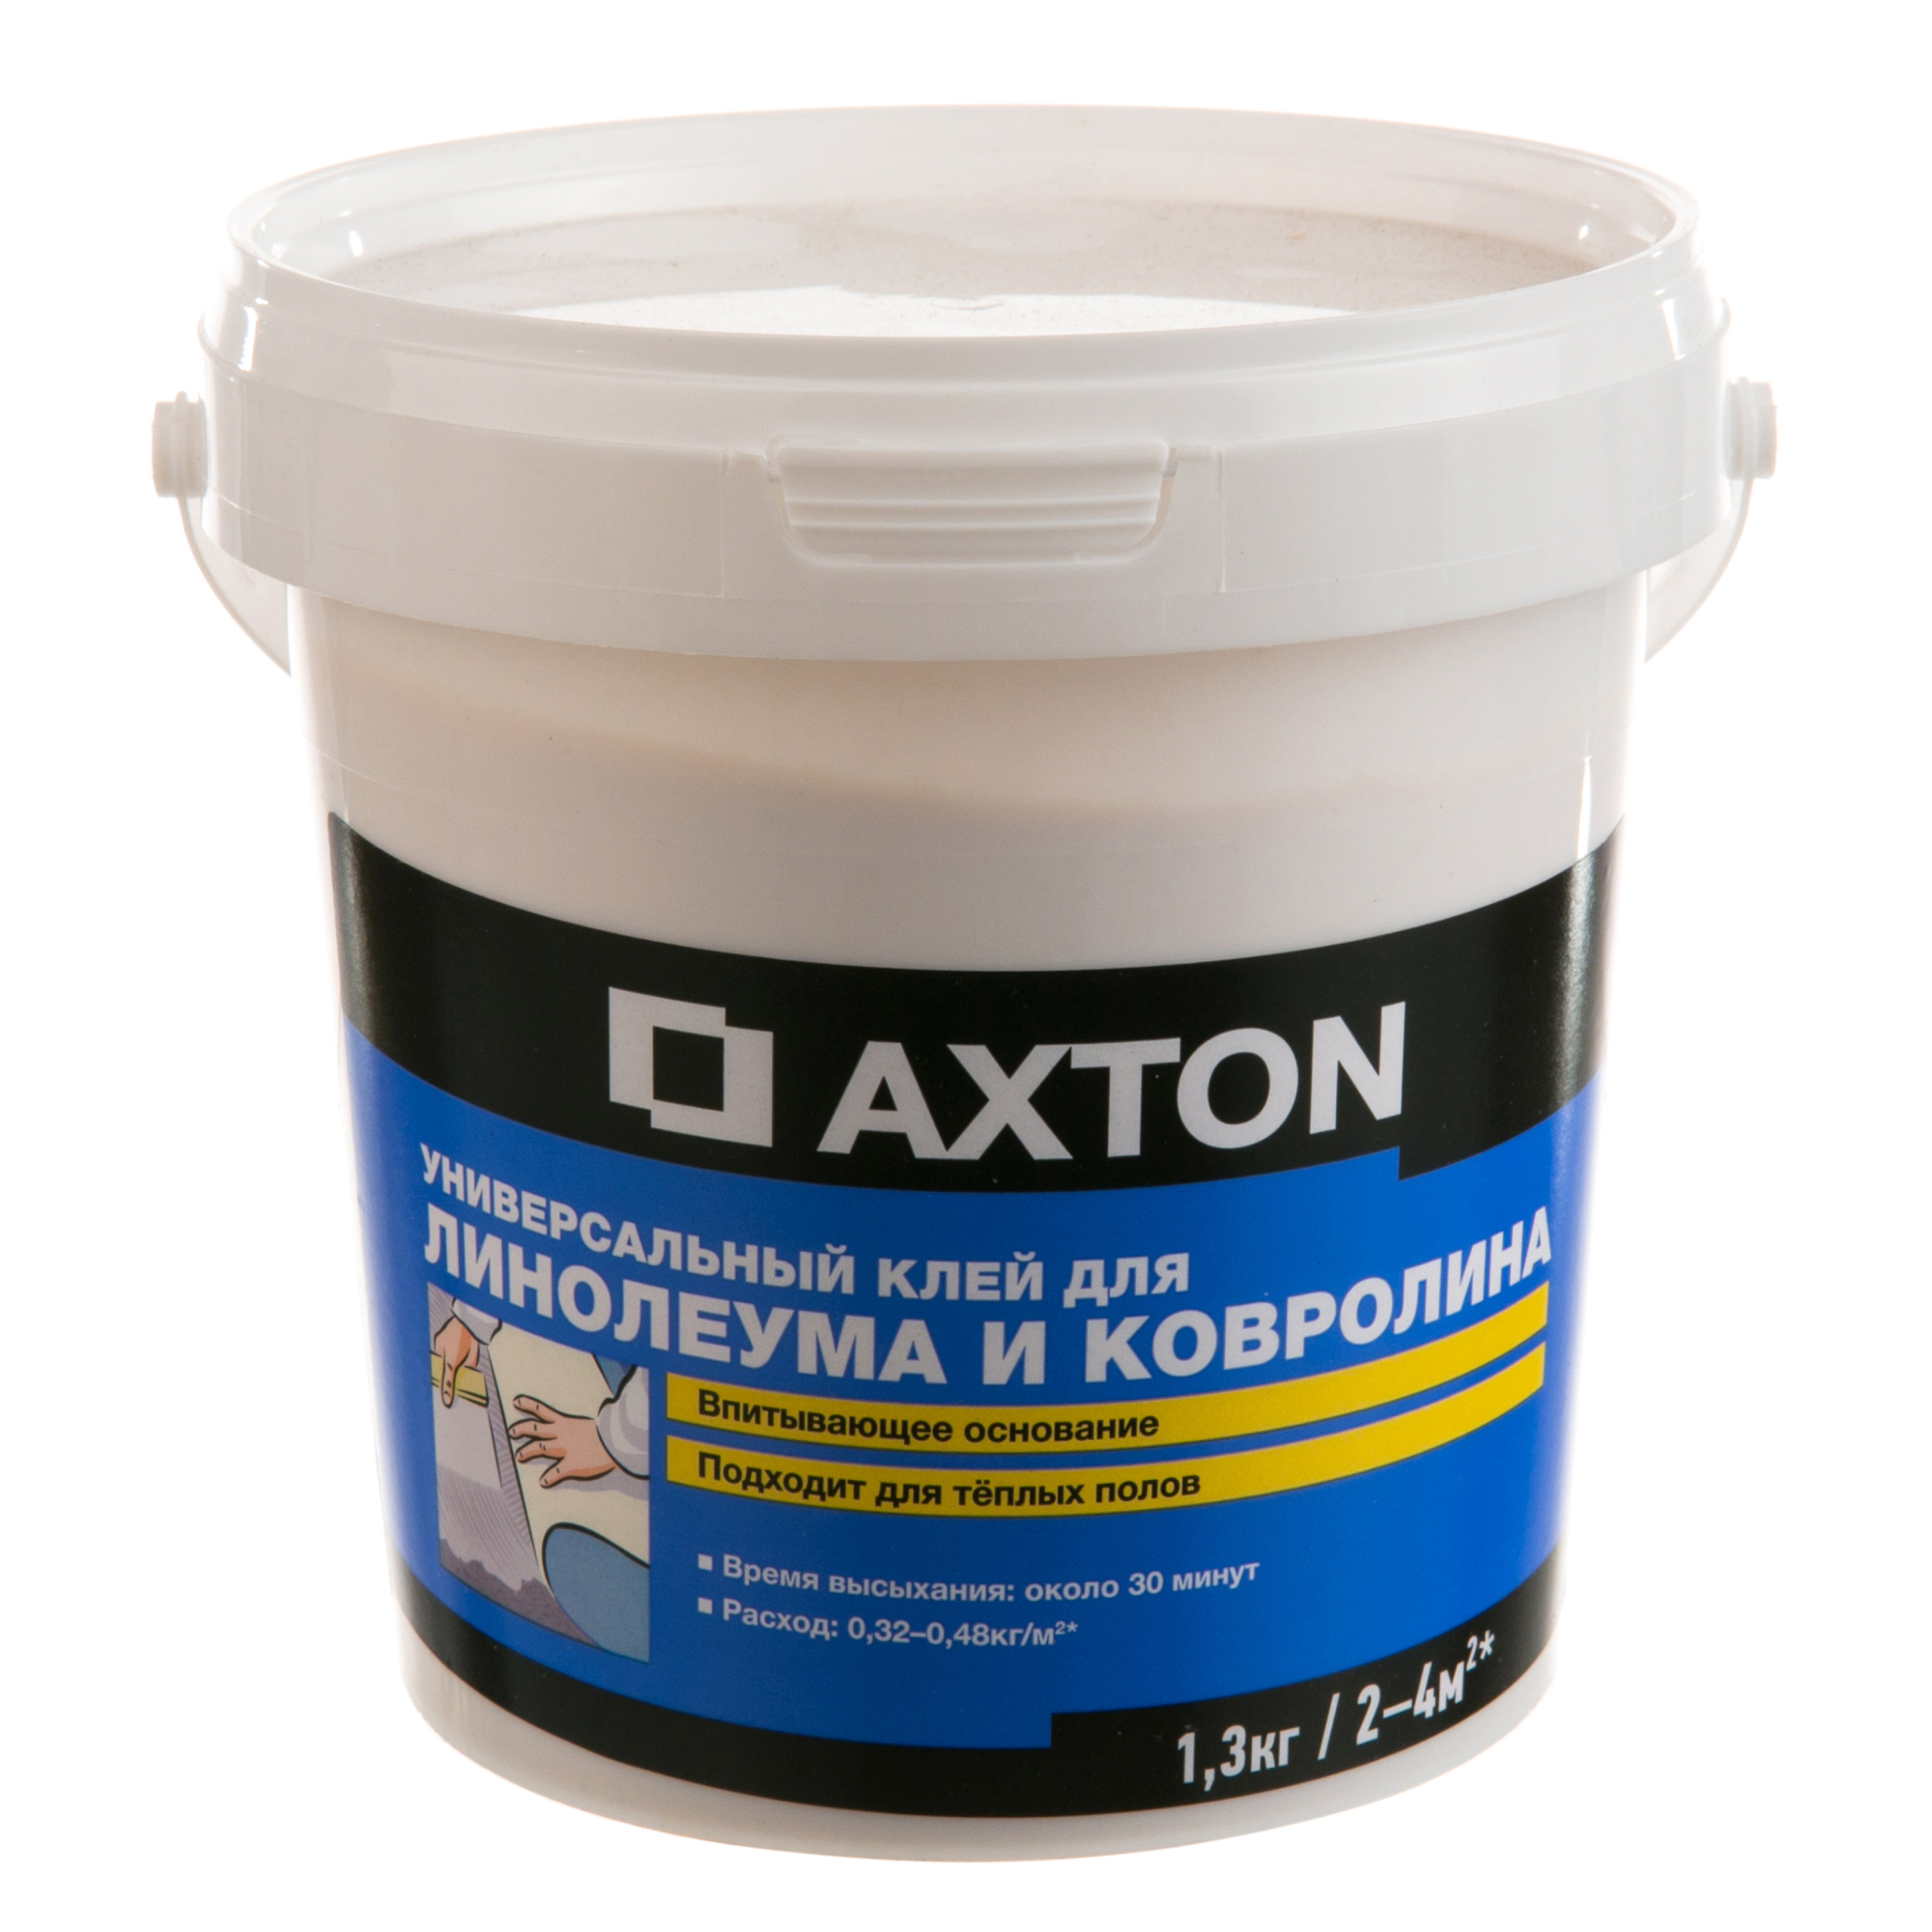 Клей Axton универсальный для линолеума и ковролина 1.3 кг в Красноярске .